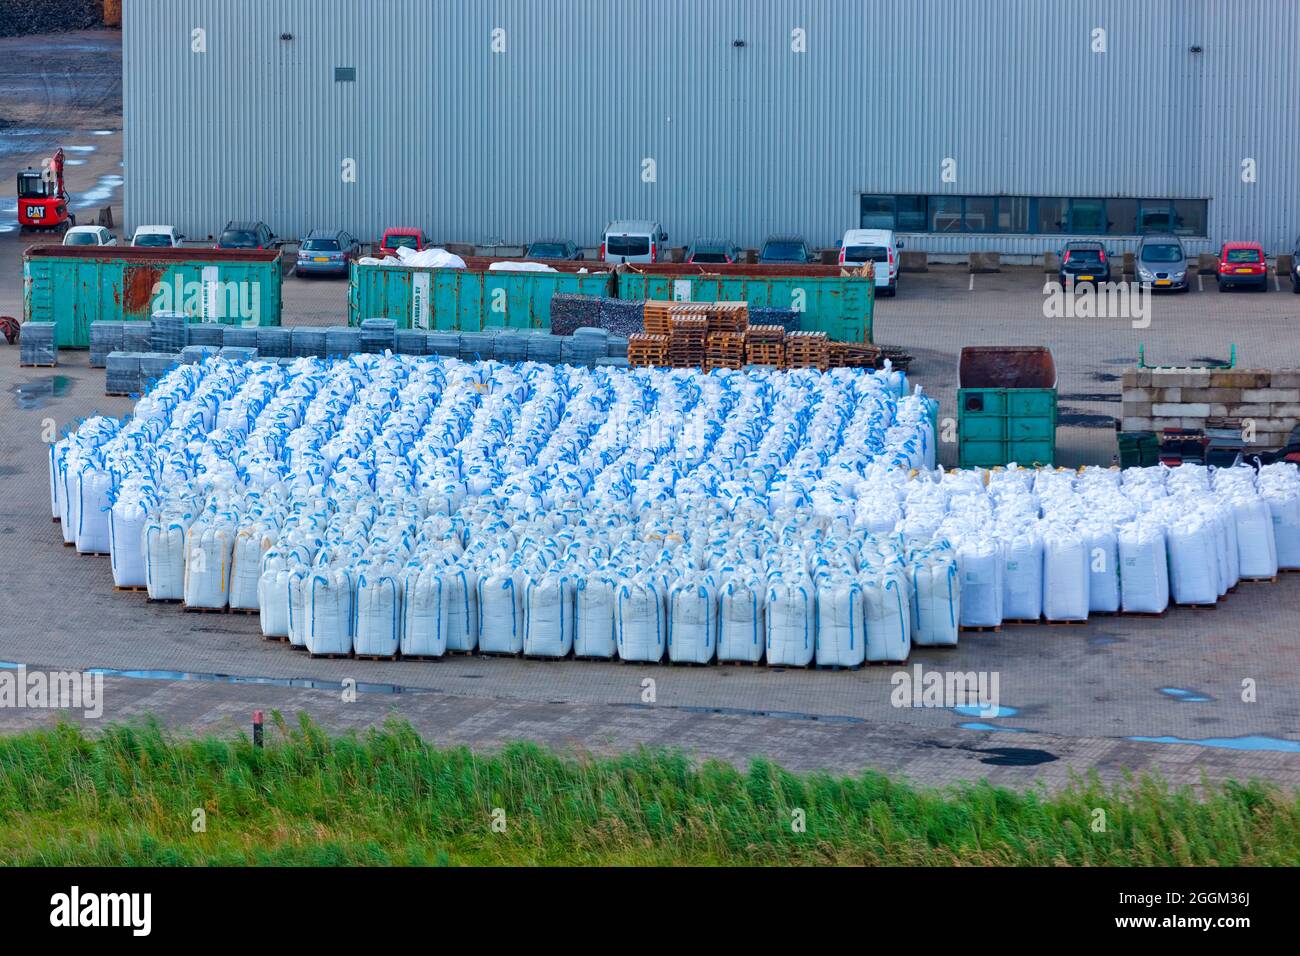 Belgium, Zeebrugge, industrial port Stock Photo